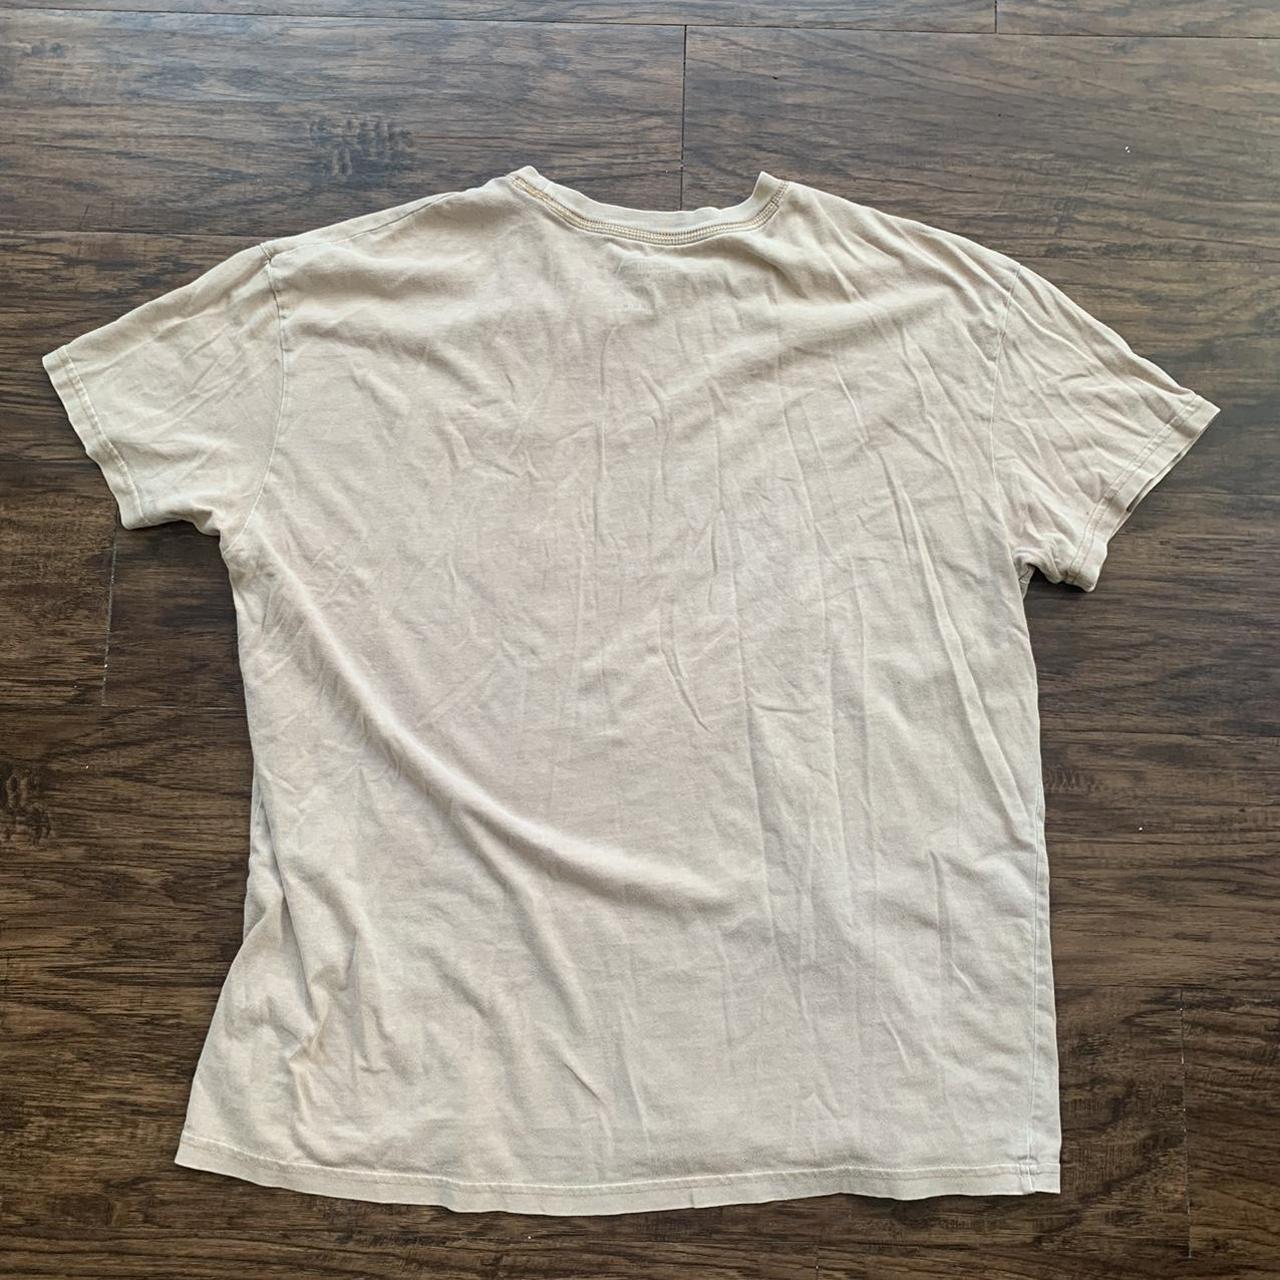 plain light brown t shirt. size XL - Depop